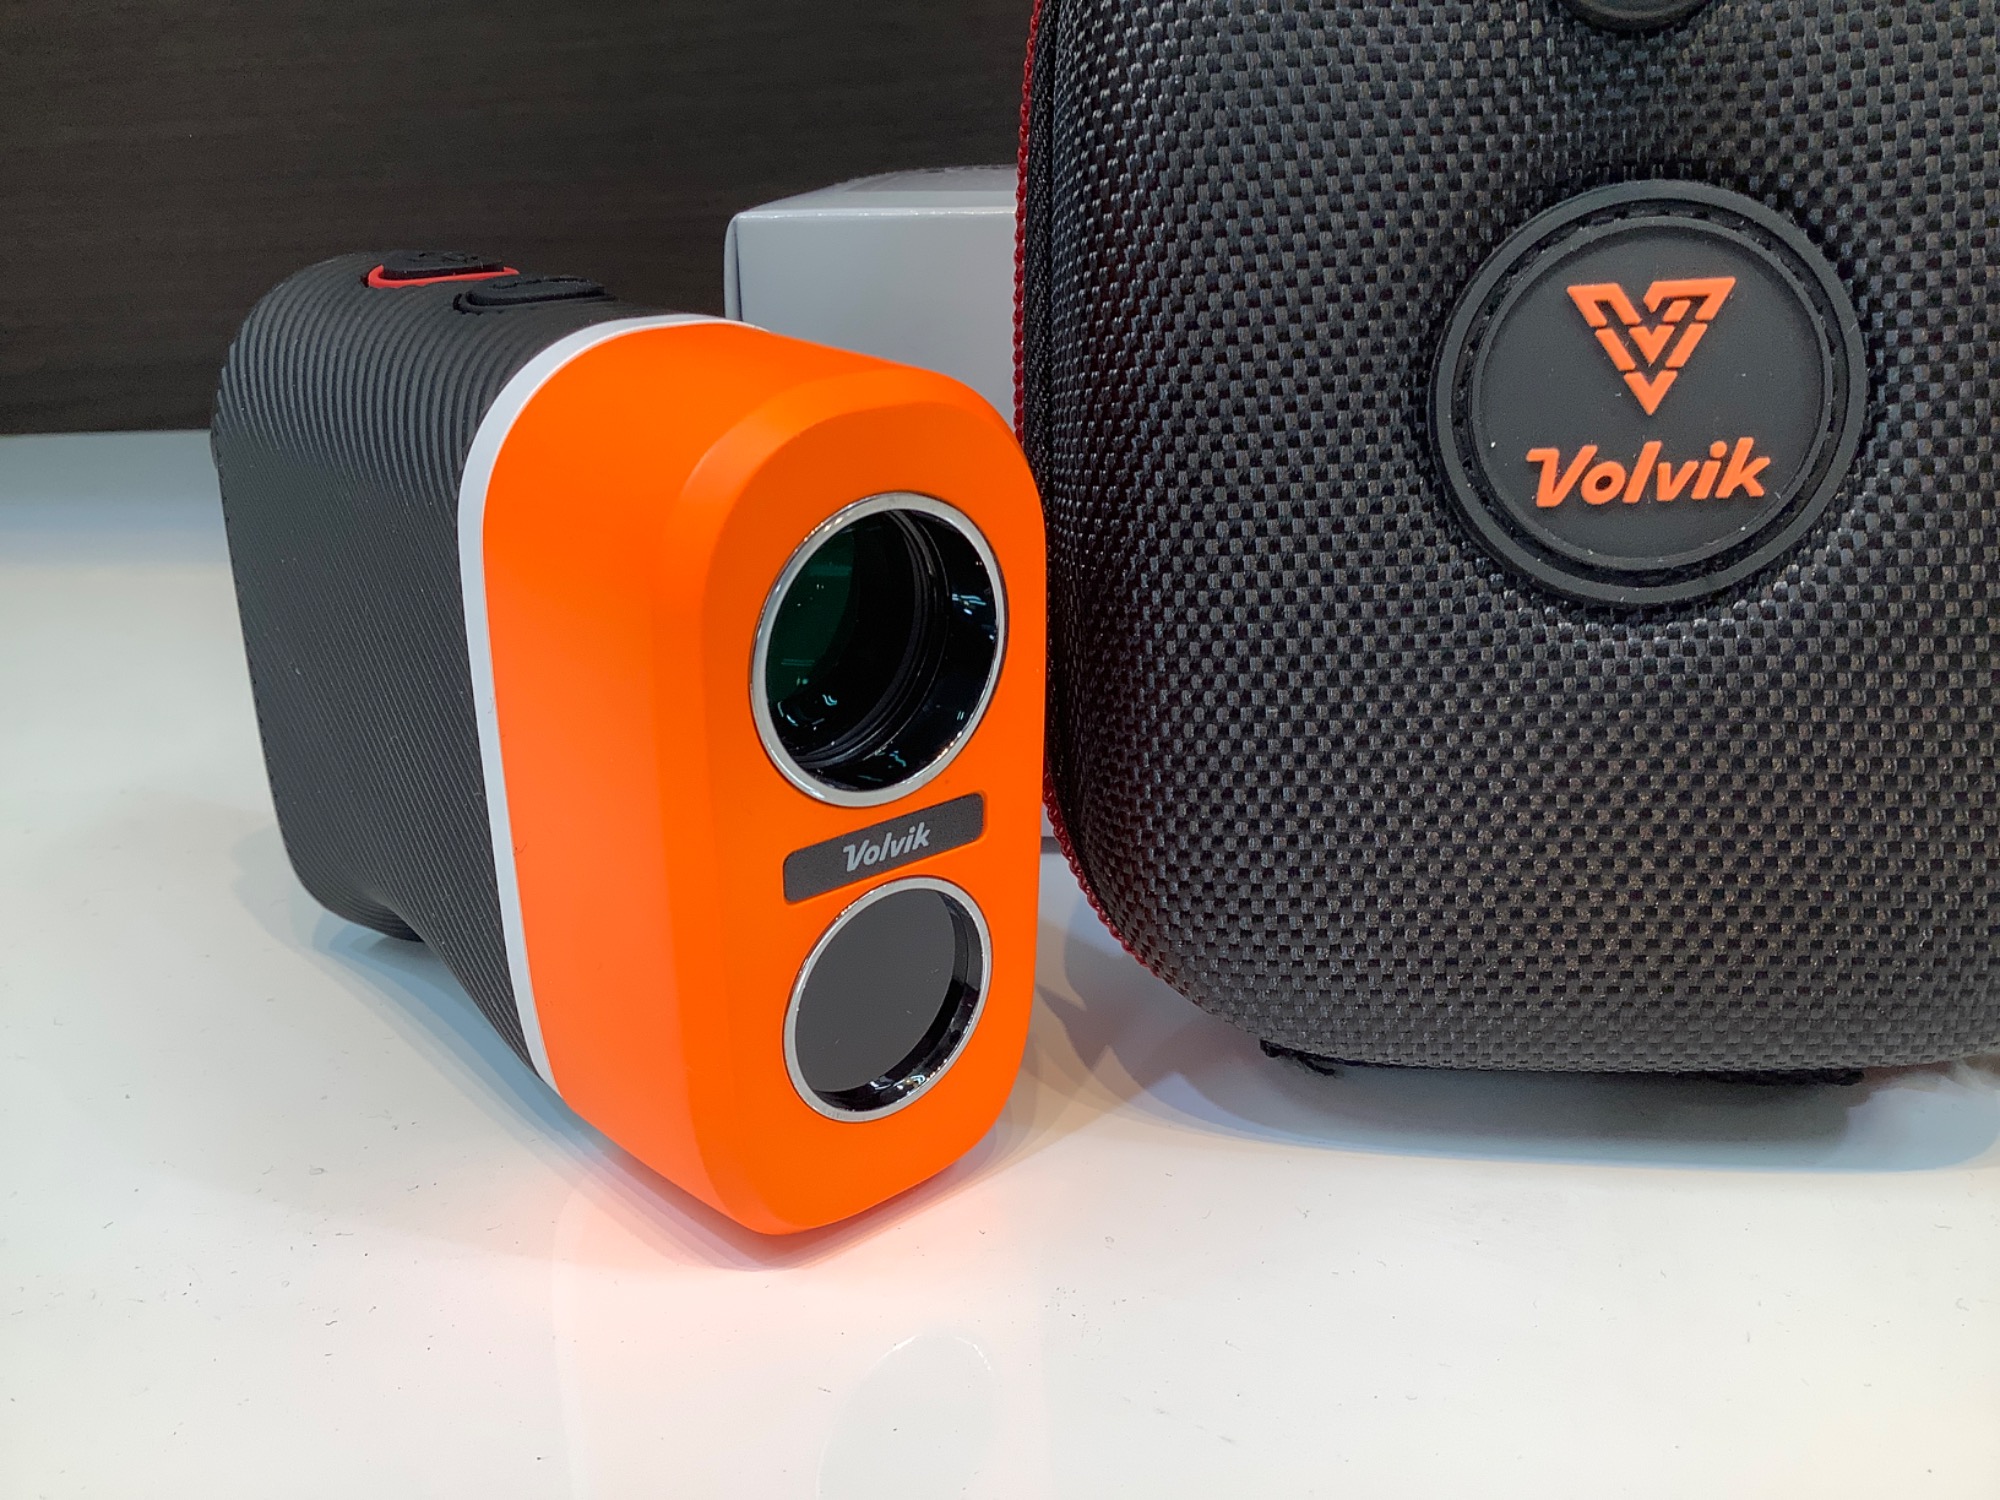 【新品未開封品】【送料無料】Volvik ボルビック v2 距離計測器 オレンジ